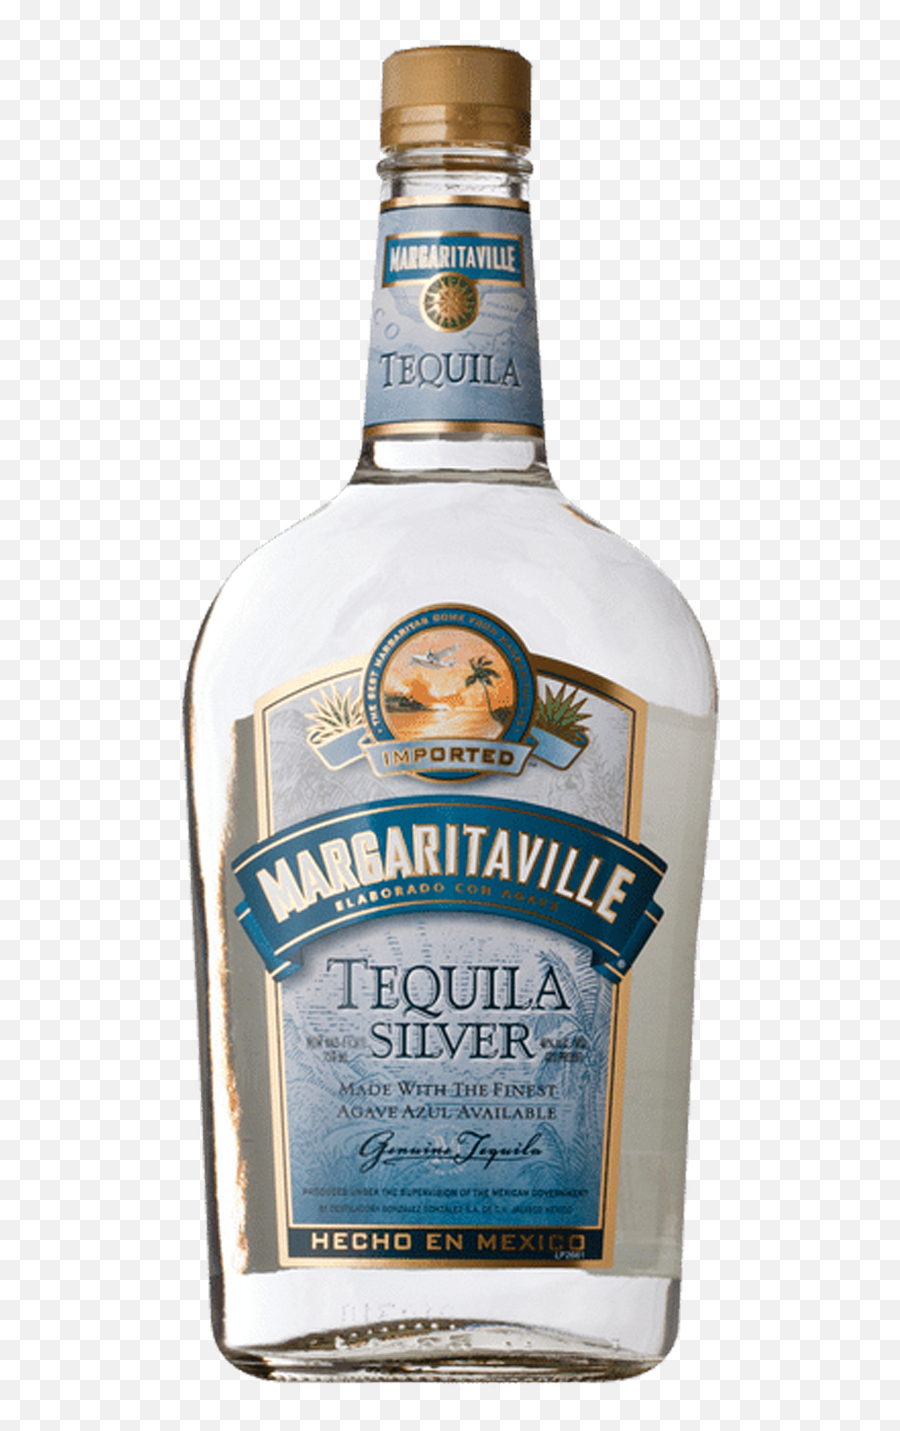 Buy Margaritaville Silver Online - Tequila Delivery Service Emoji,Margaritaville Logo